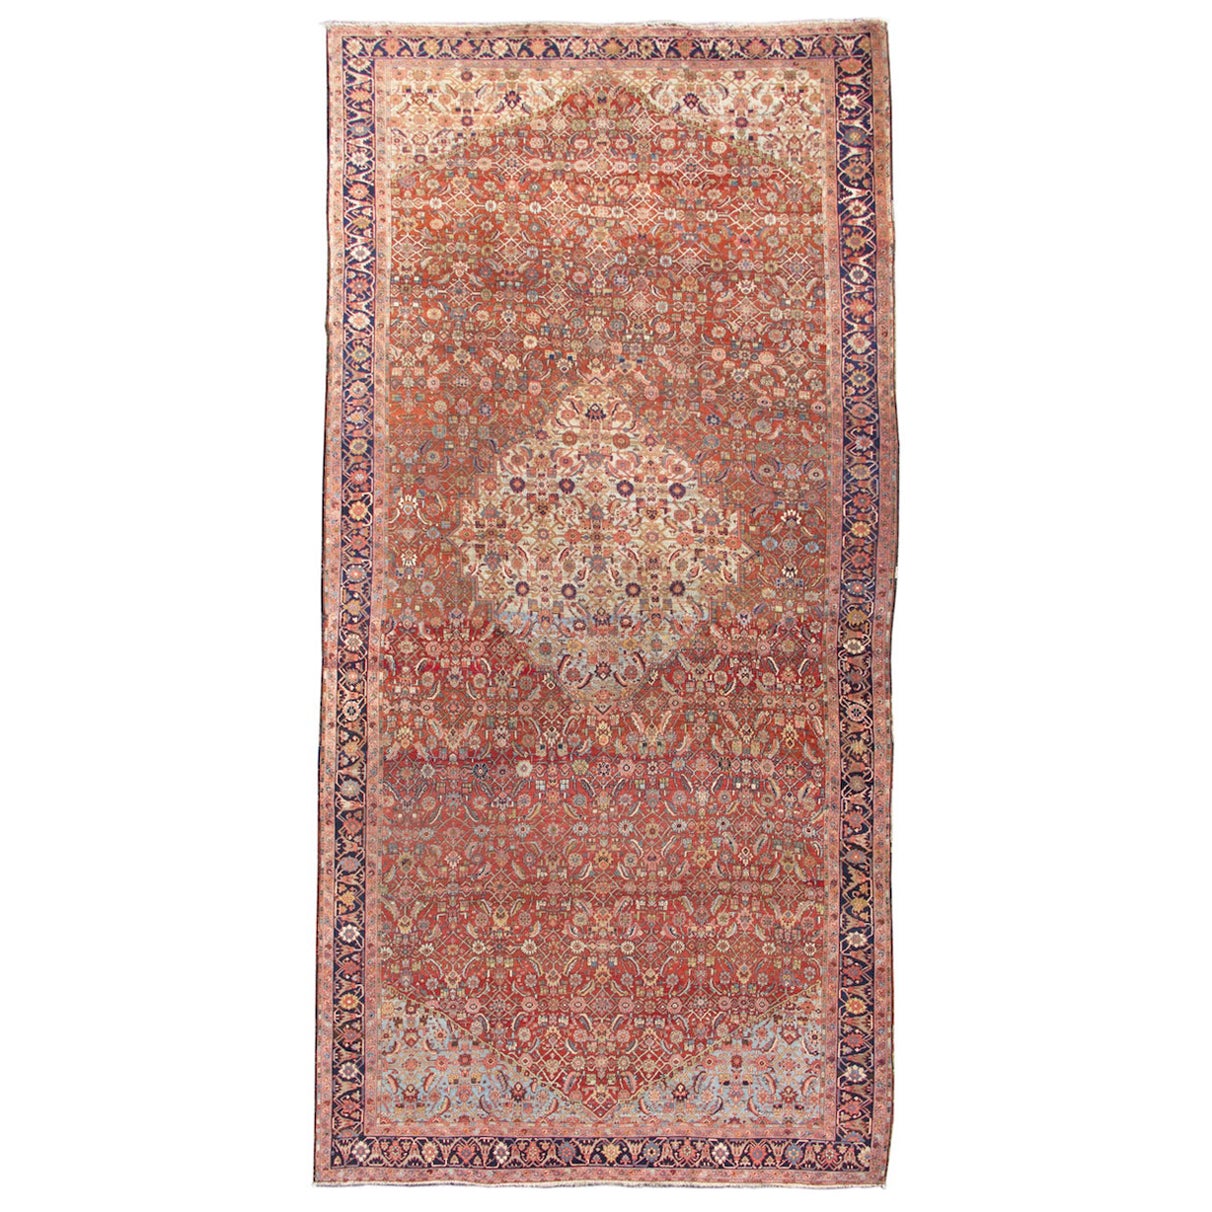 Antique Persian Heriz Rug, c. 1900